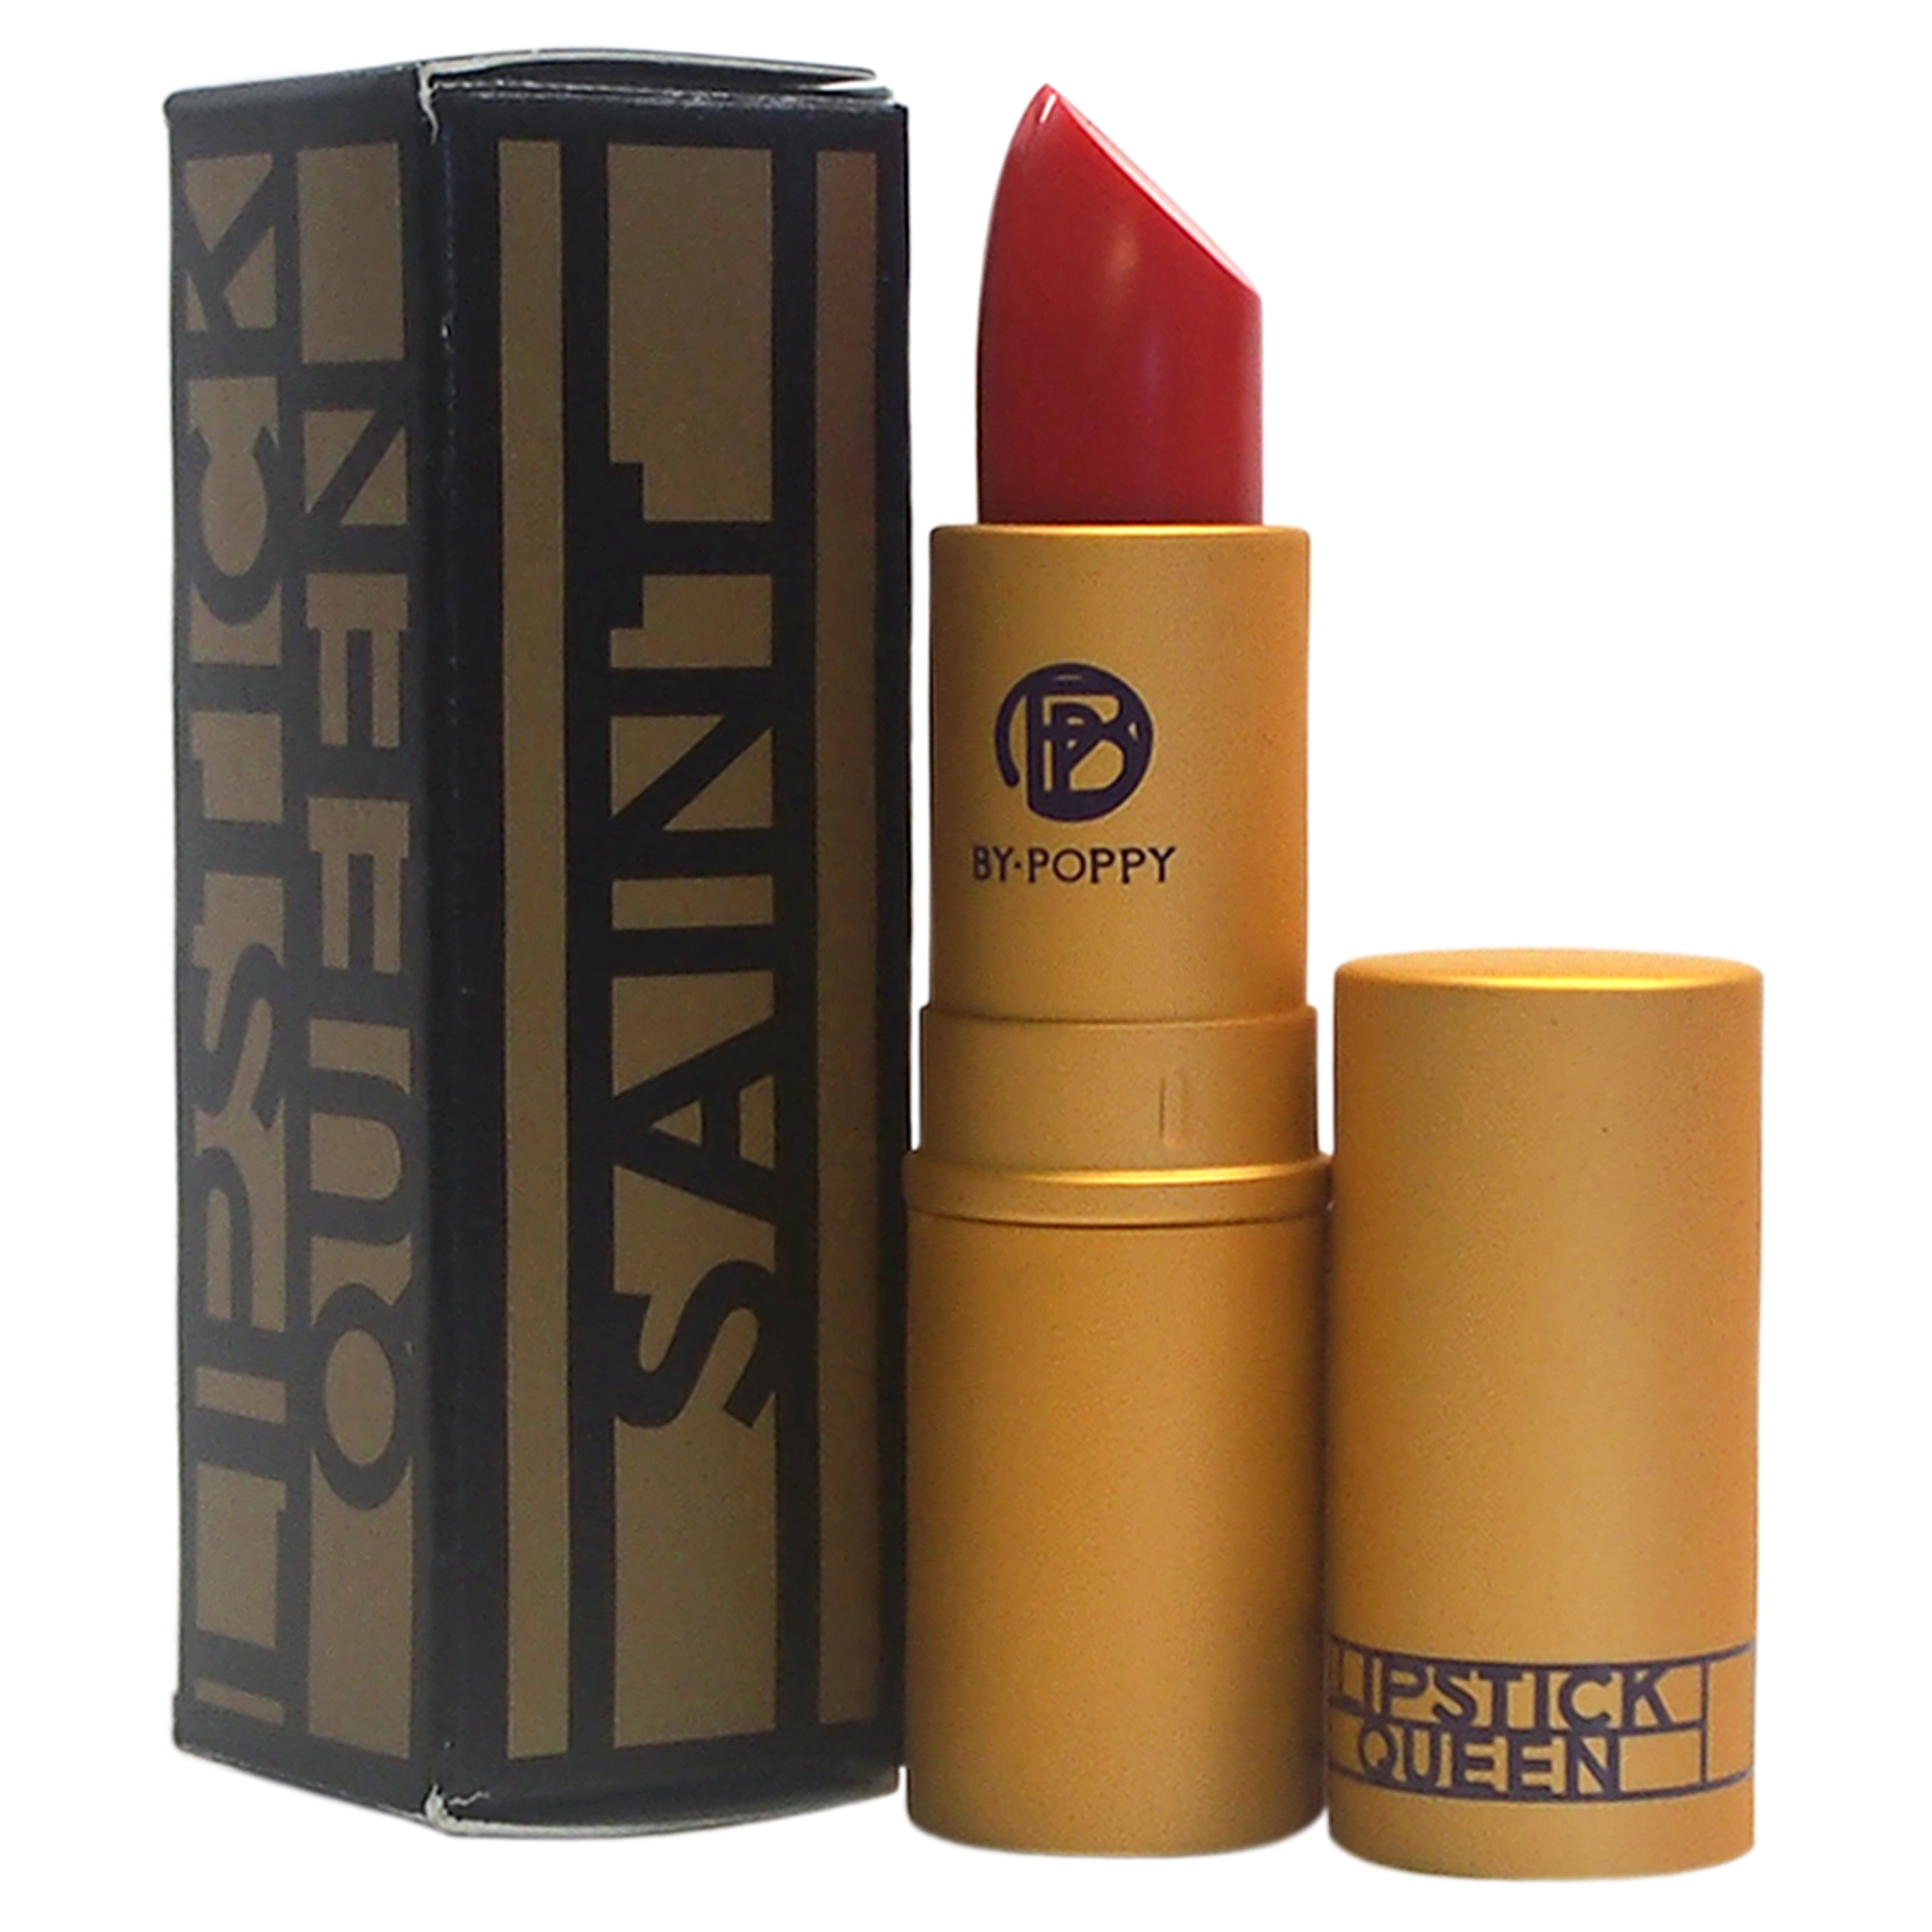 Lipstick Queen Saint Lipstick - Fire Red by  for Women - 0.12 oz Lipstick